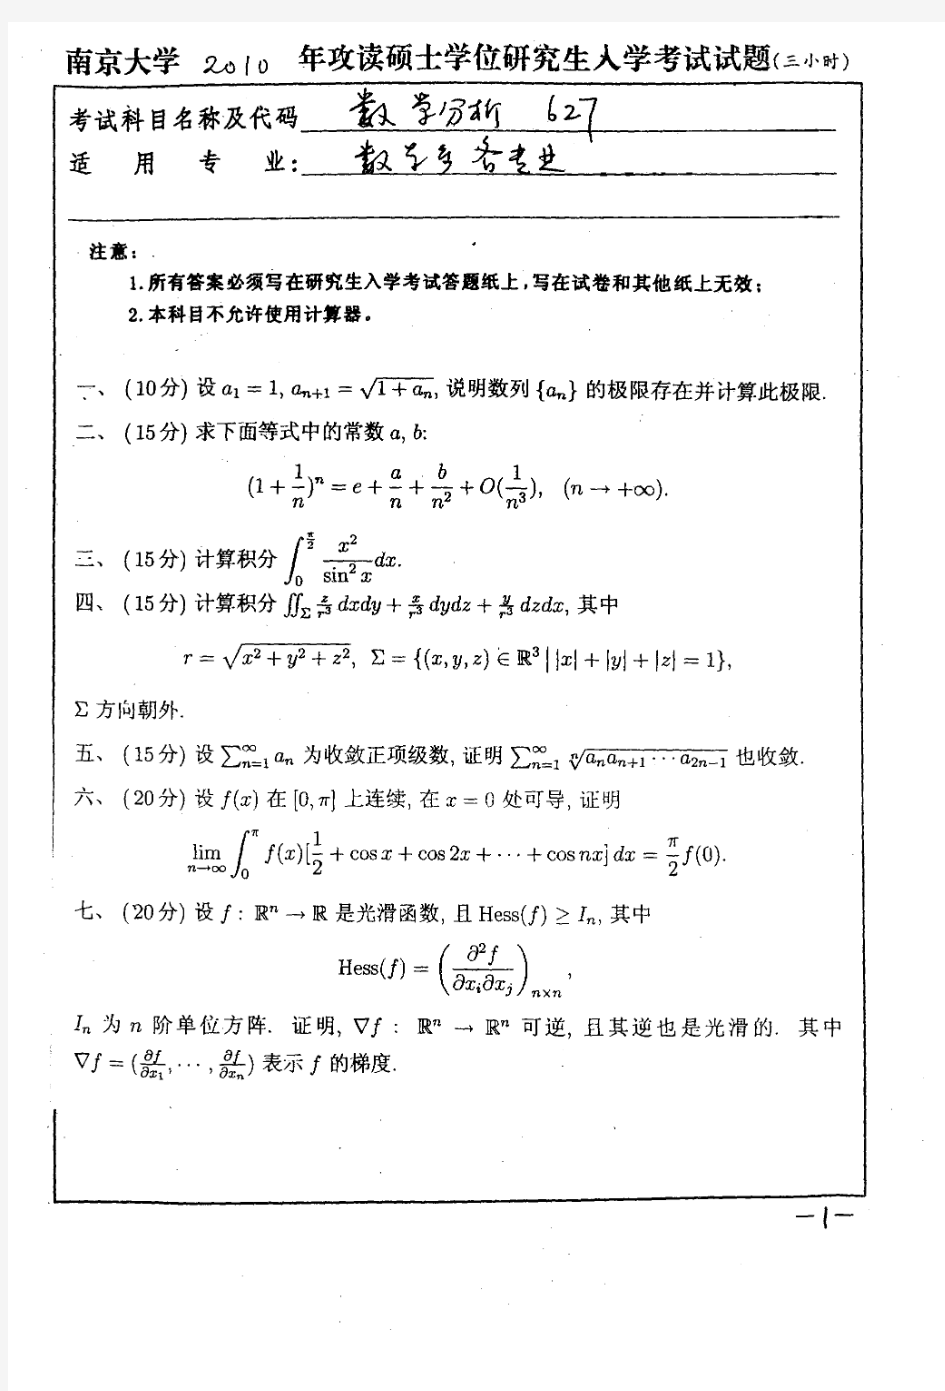 2010年南京大学数学分析考研试题